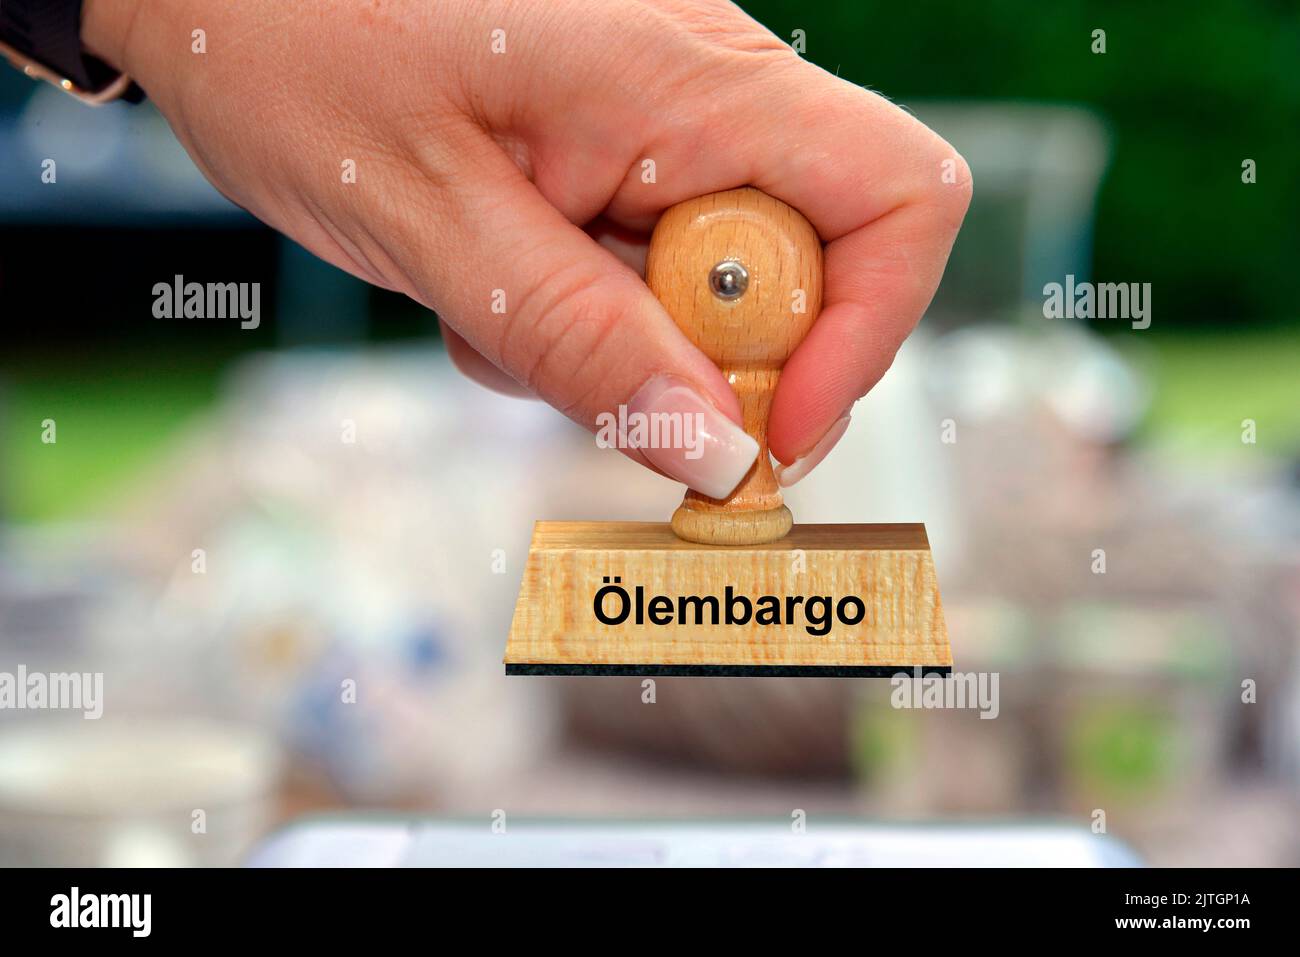 Main d'une femme avec un cachet lettrage Oelembargo, embargo pétrolier, Allemagne Banque D'Images